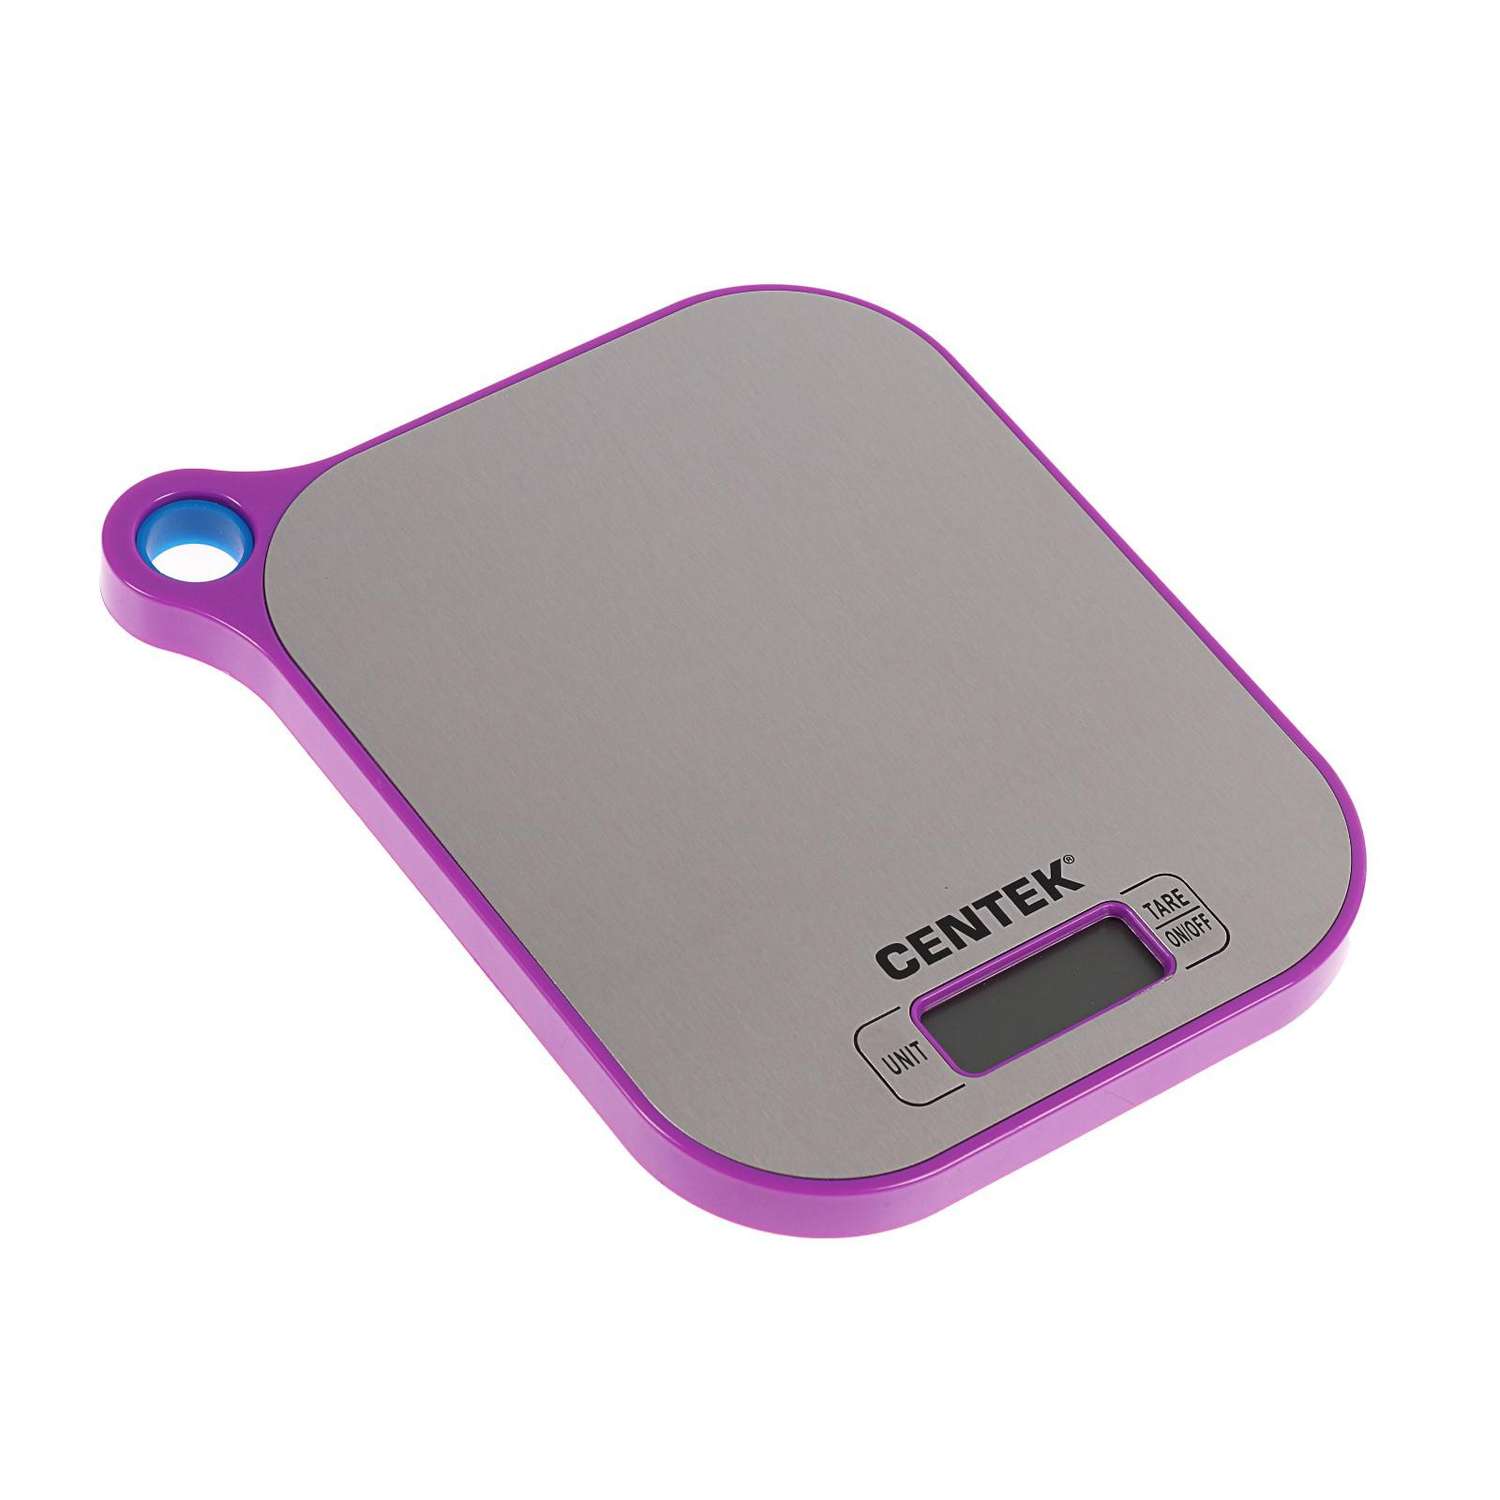 Весы кухонные Luazon Home CT-2461 электронные до 5 кг серебристо-фиолетовые - фото 1